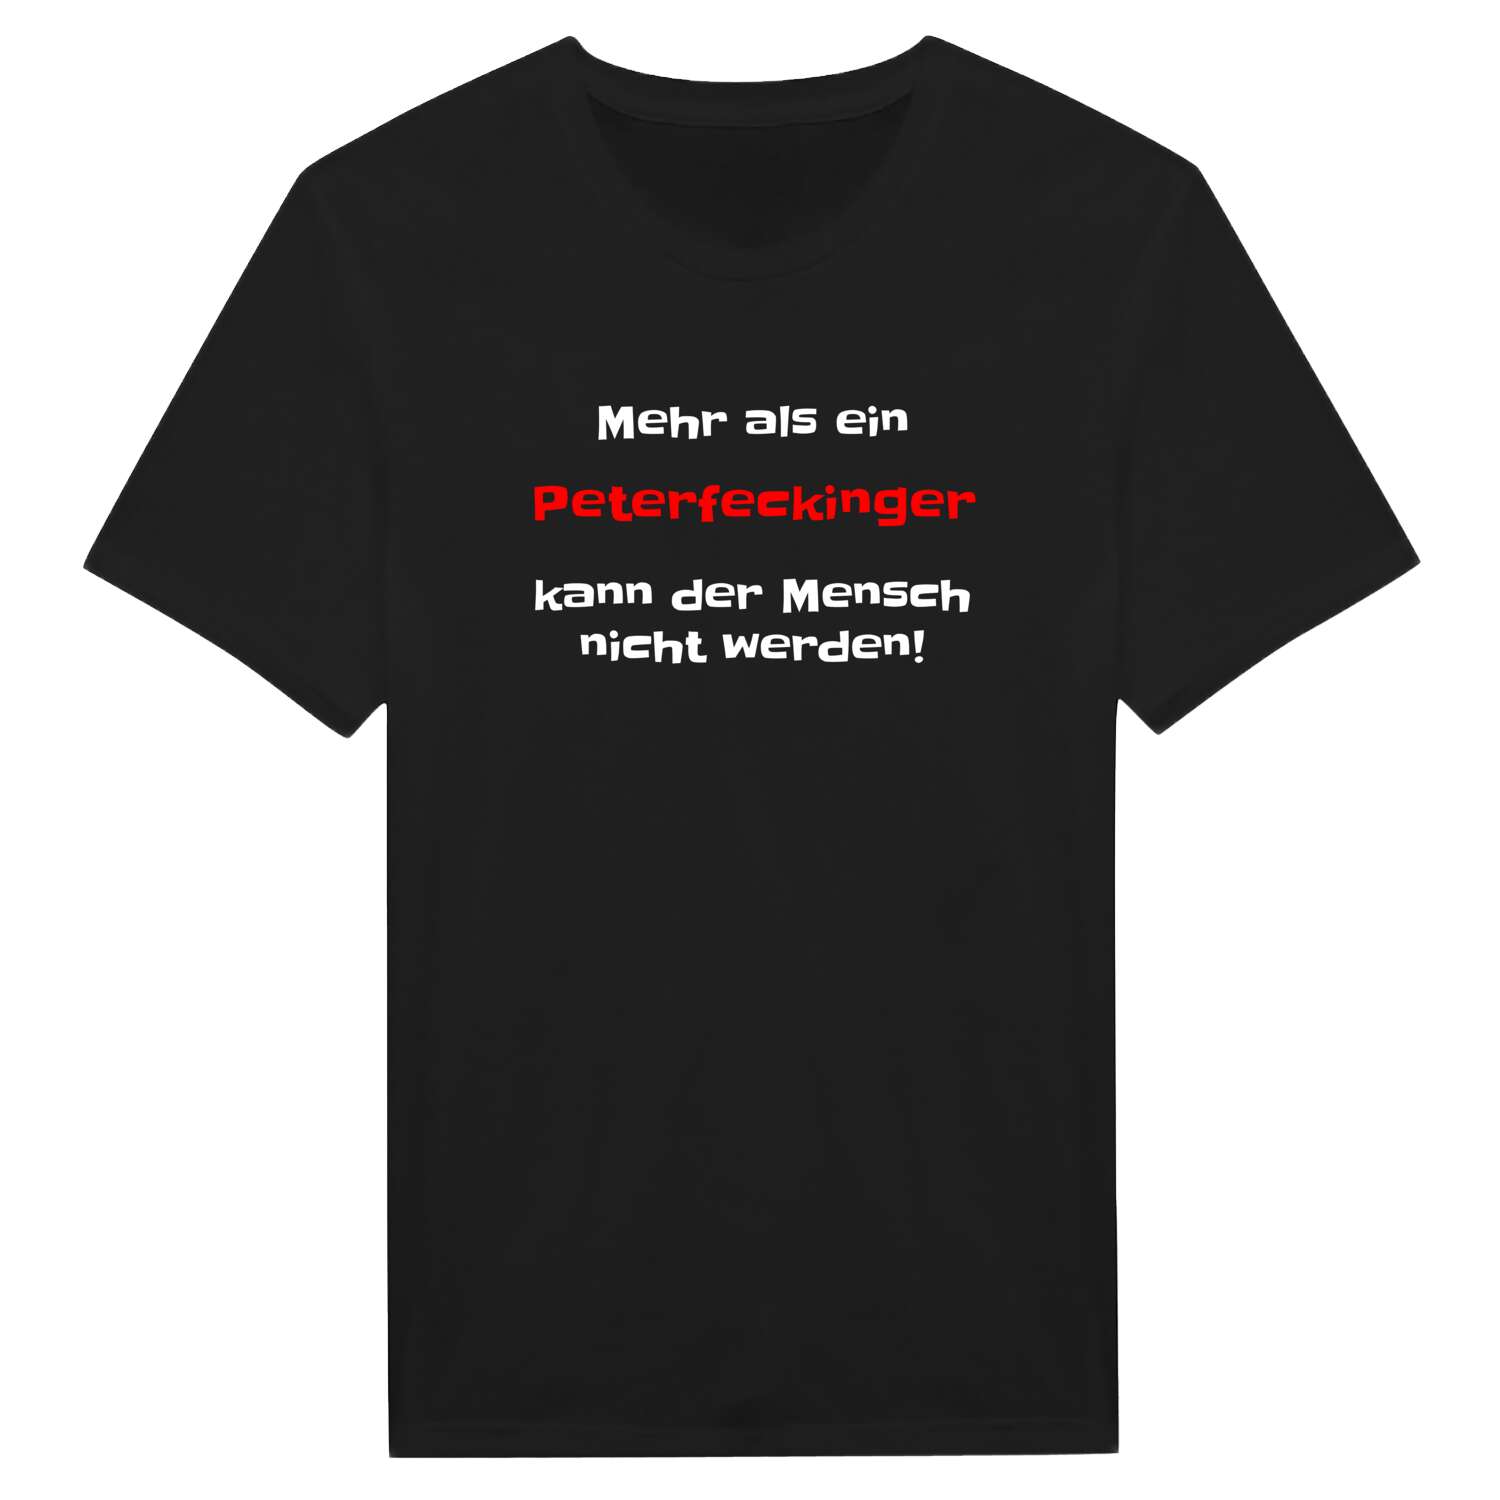 Peterfecking T-Shirt »Mehr als ein«